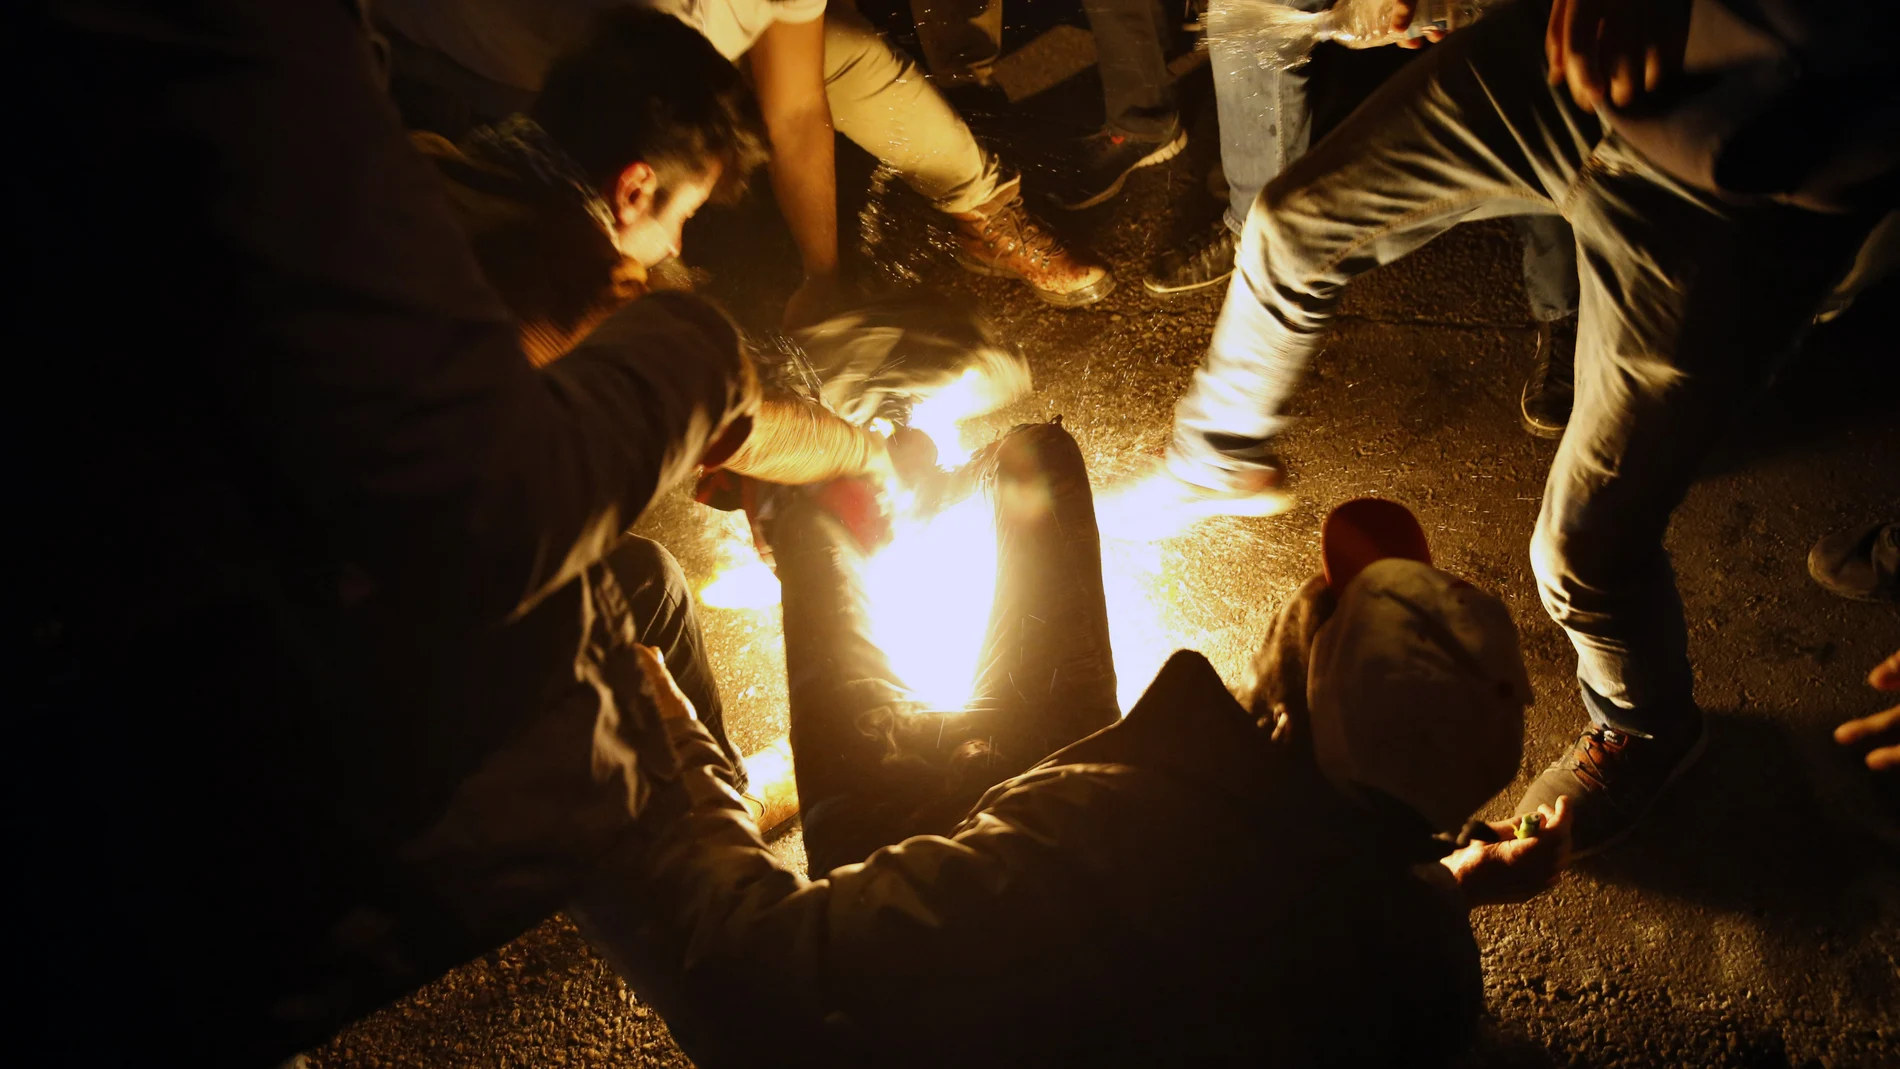 Algunos manifestantes tratan de apagar las llamas del hombre que intentó quemarse a lo bonzo. © AP Photo/Bilal Hussein)